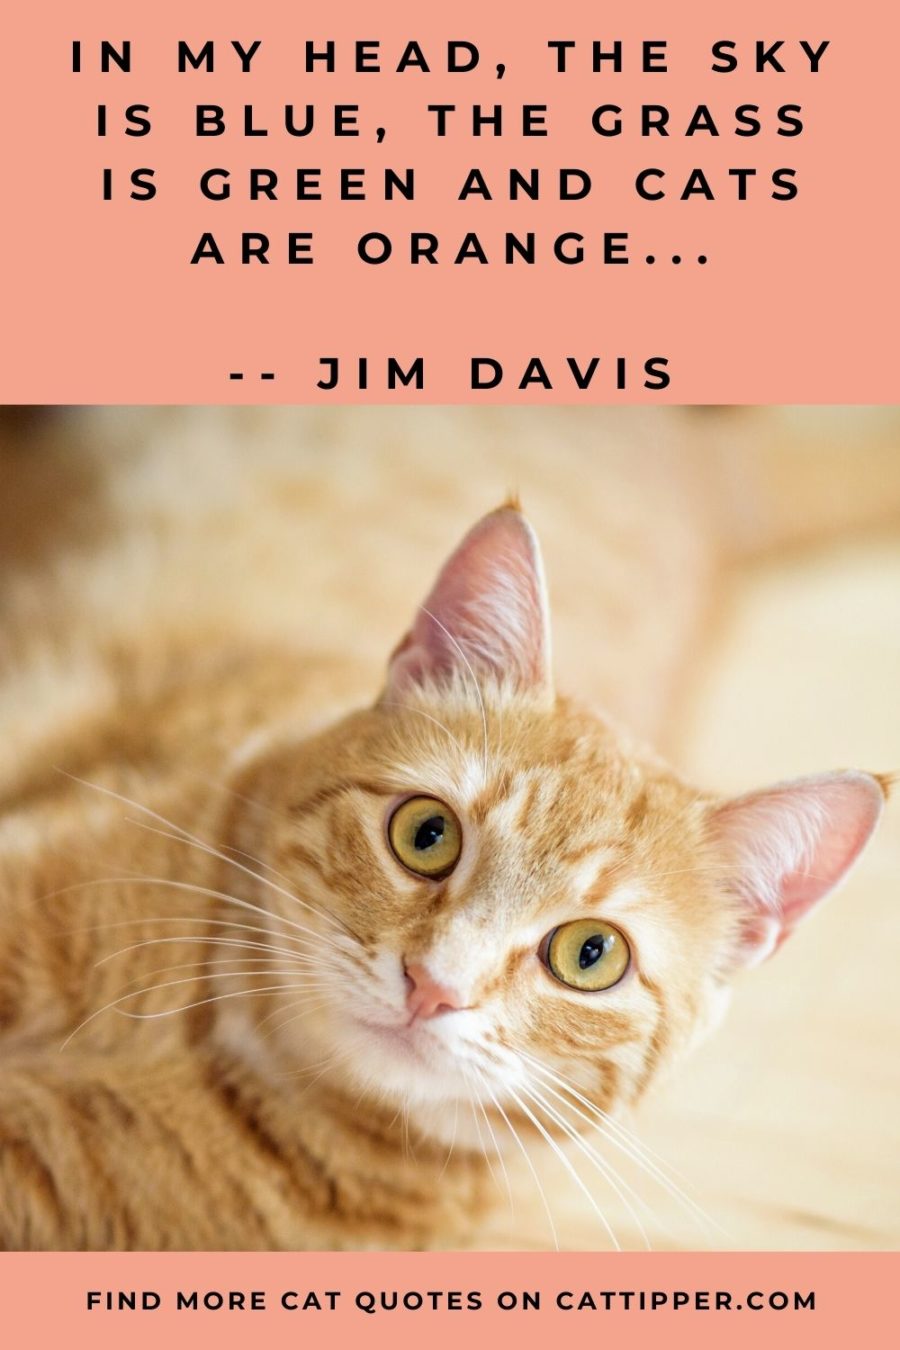 famous cat quote by jim davis